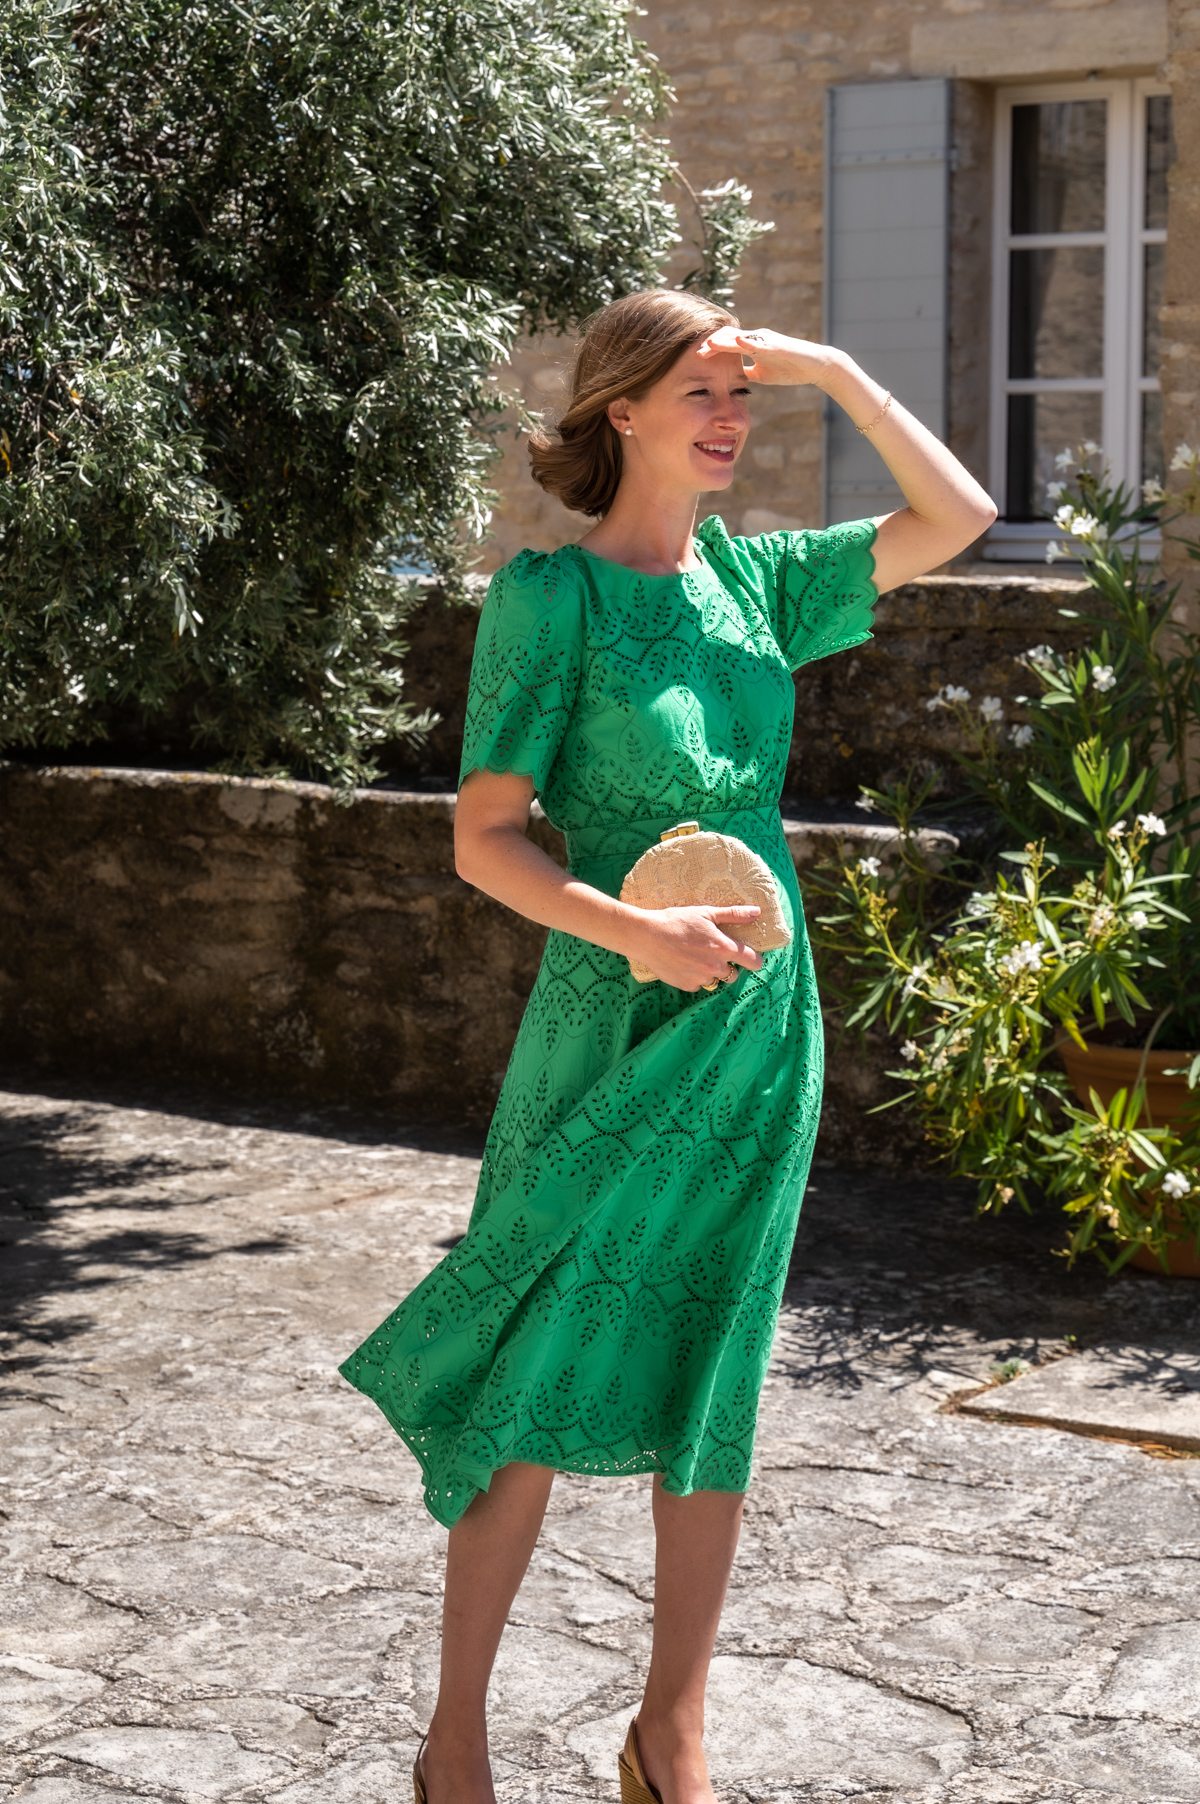 Stacie Flinner France Summer Outfits Sezane Dress-4.jpg